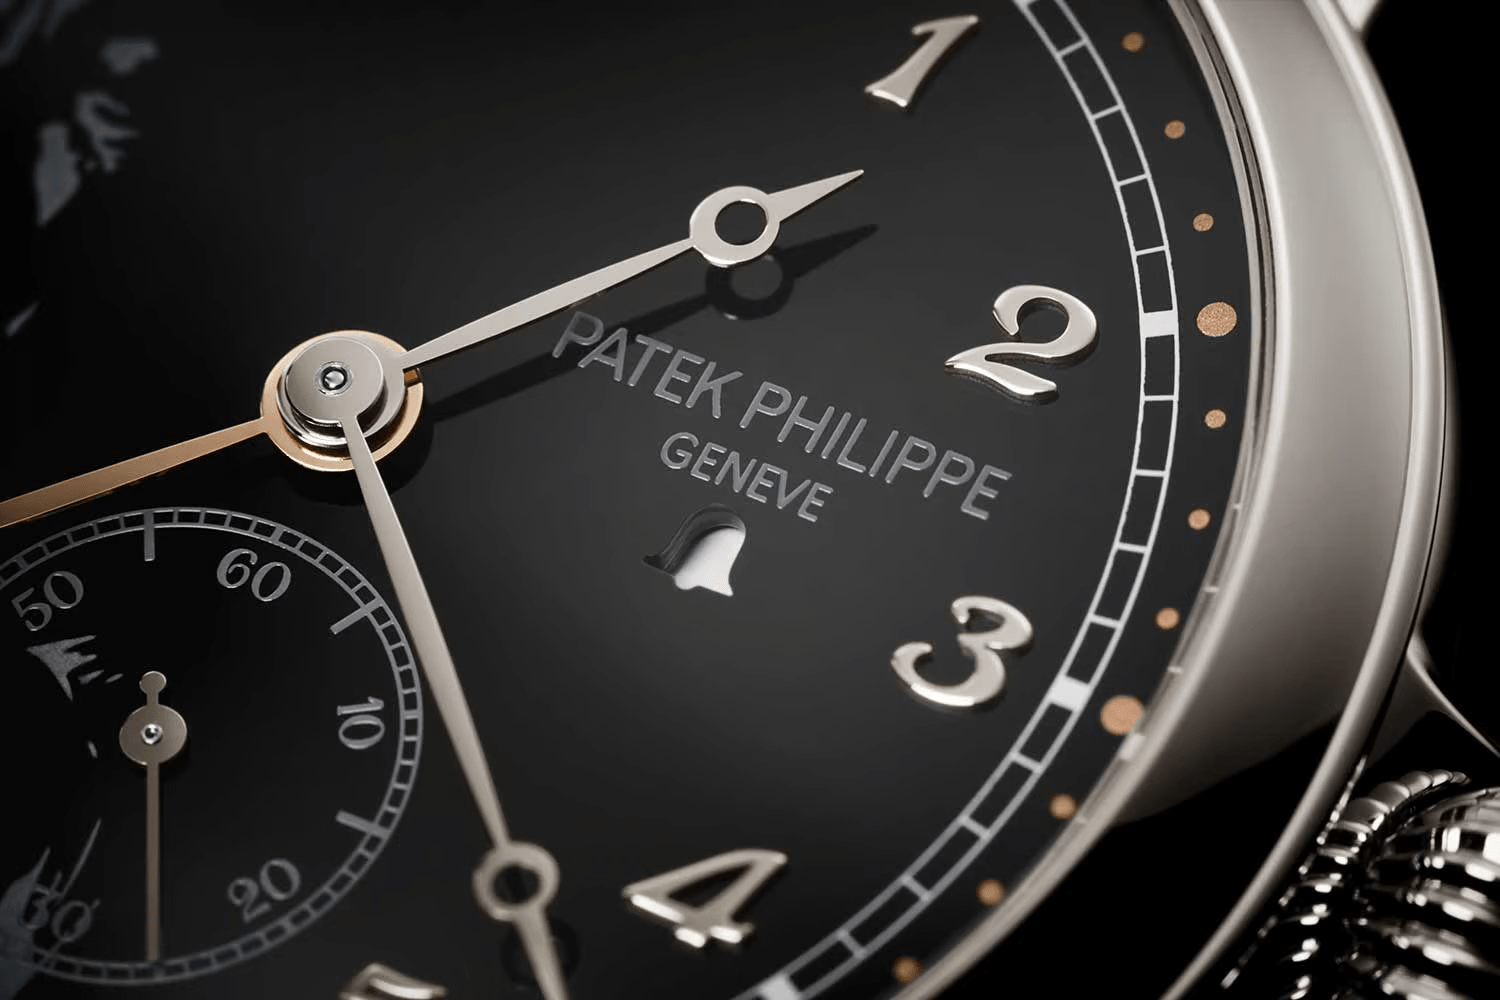 Đồng hồ điểm chuông lặp phút mới nhất của Patek Philippe